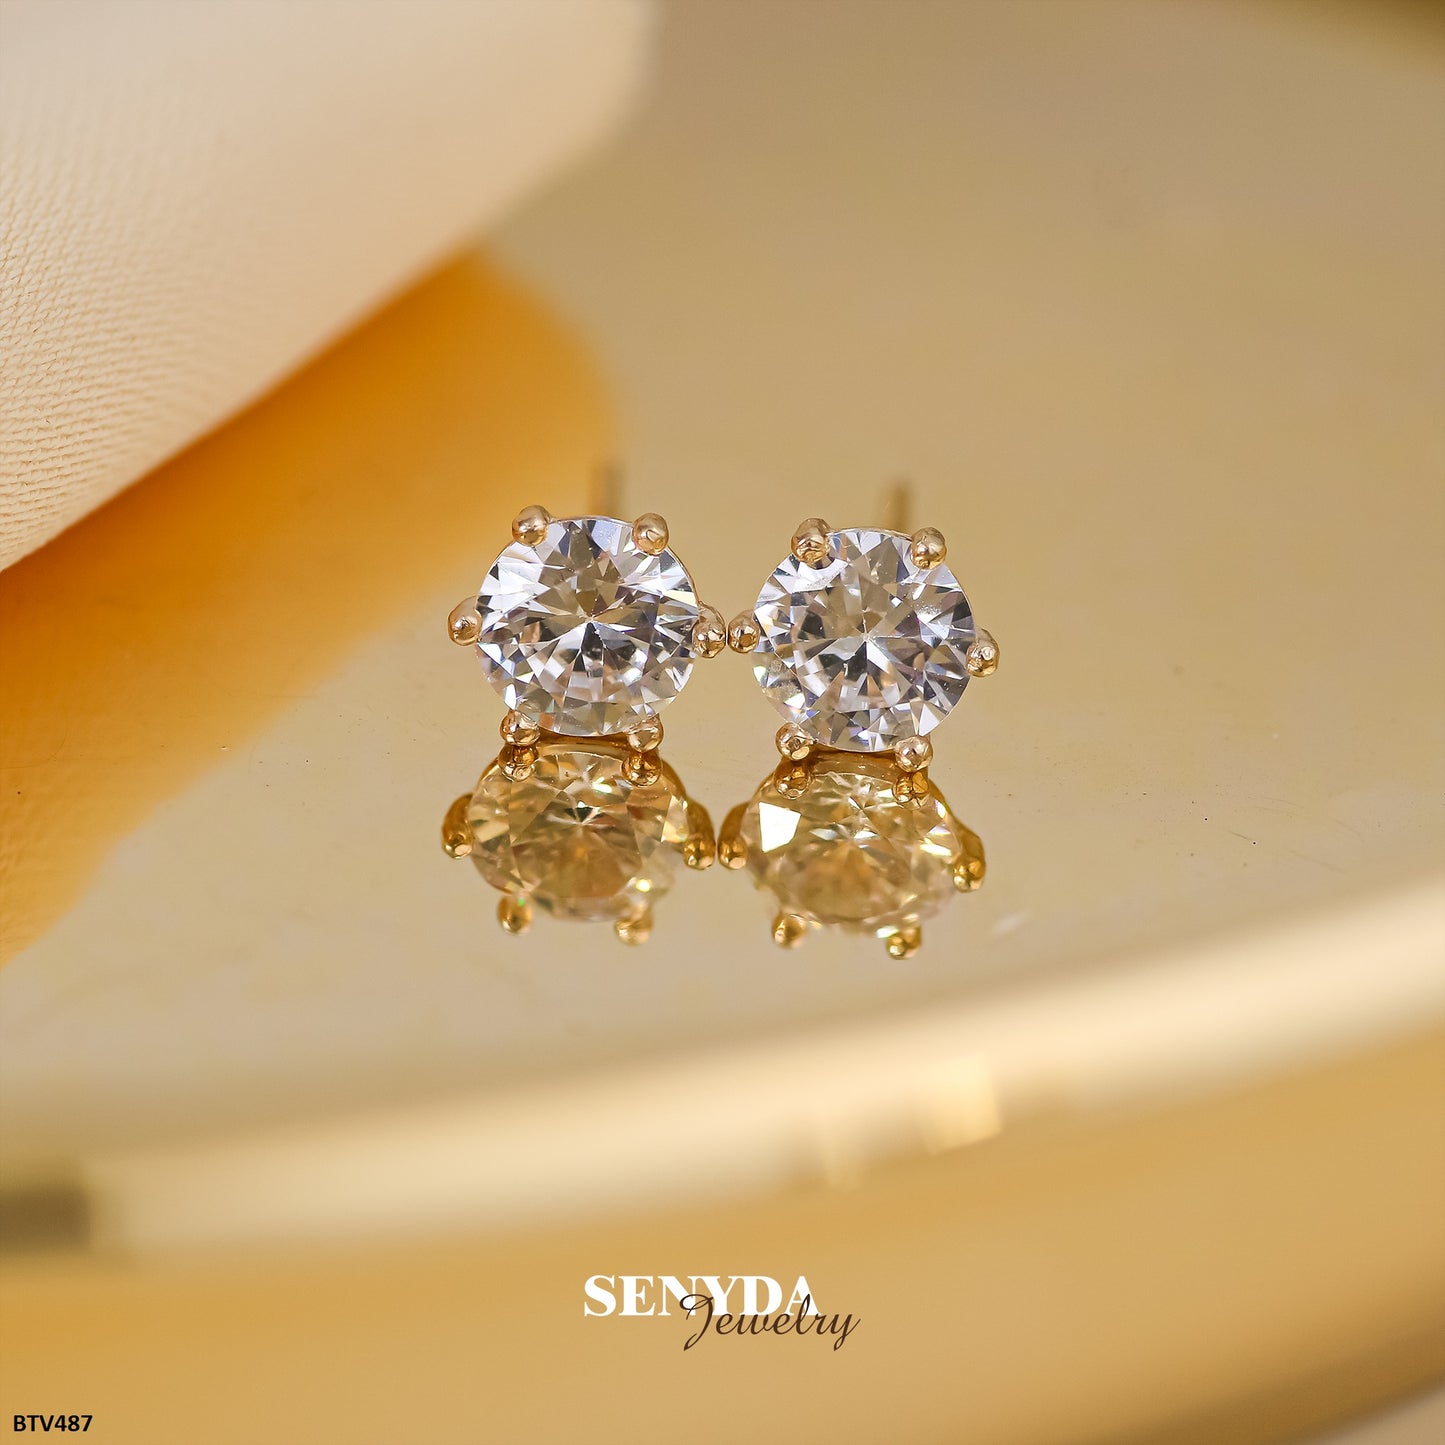 Senyda 14K Solid Gold Stud Earrings - LILYANA EARRINGS